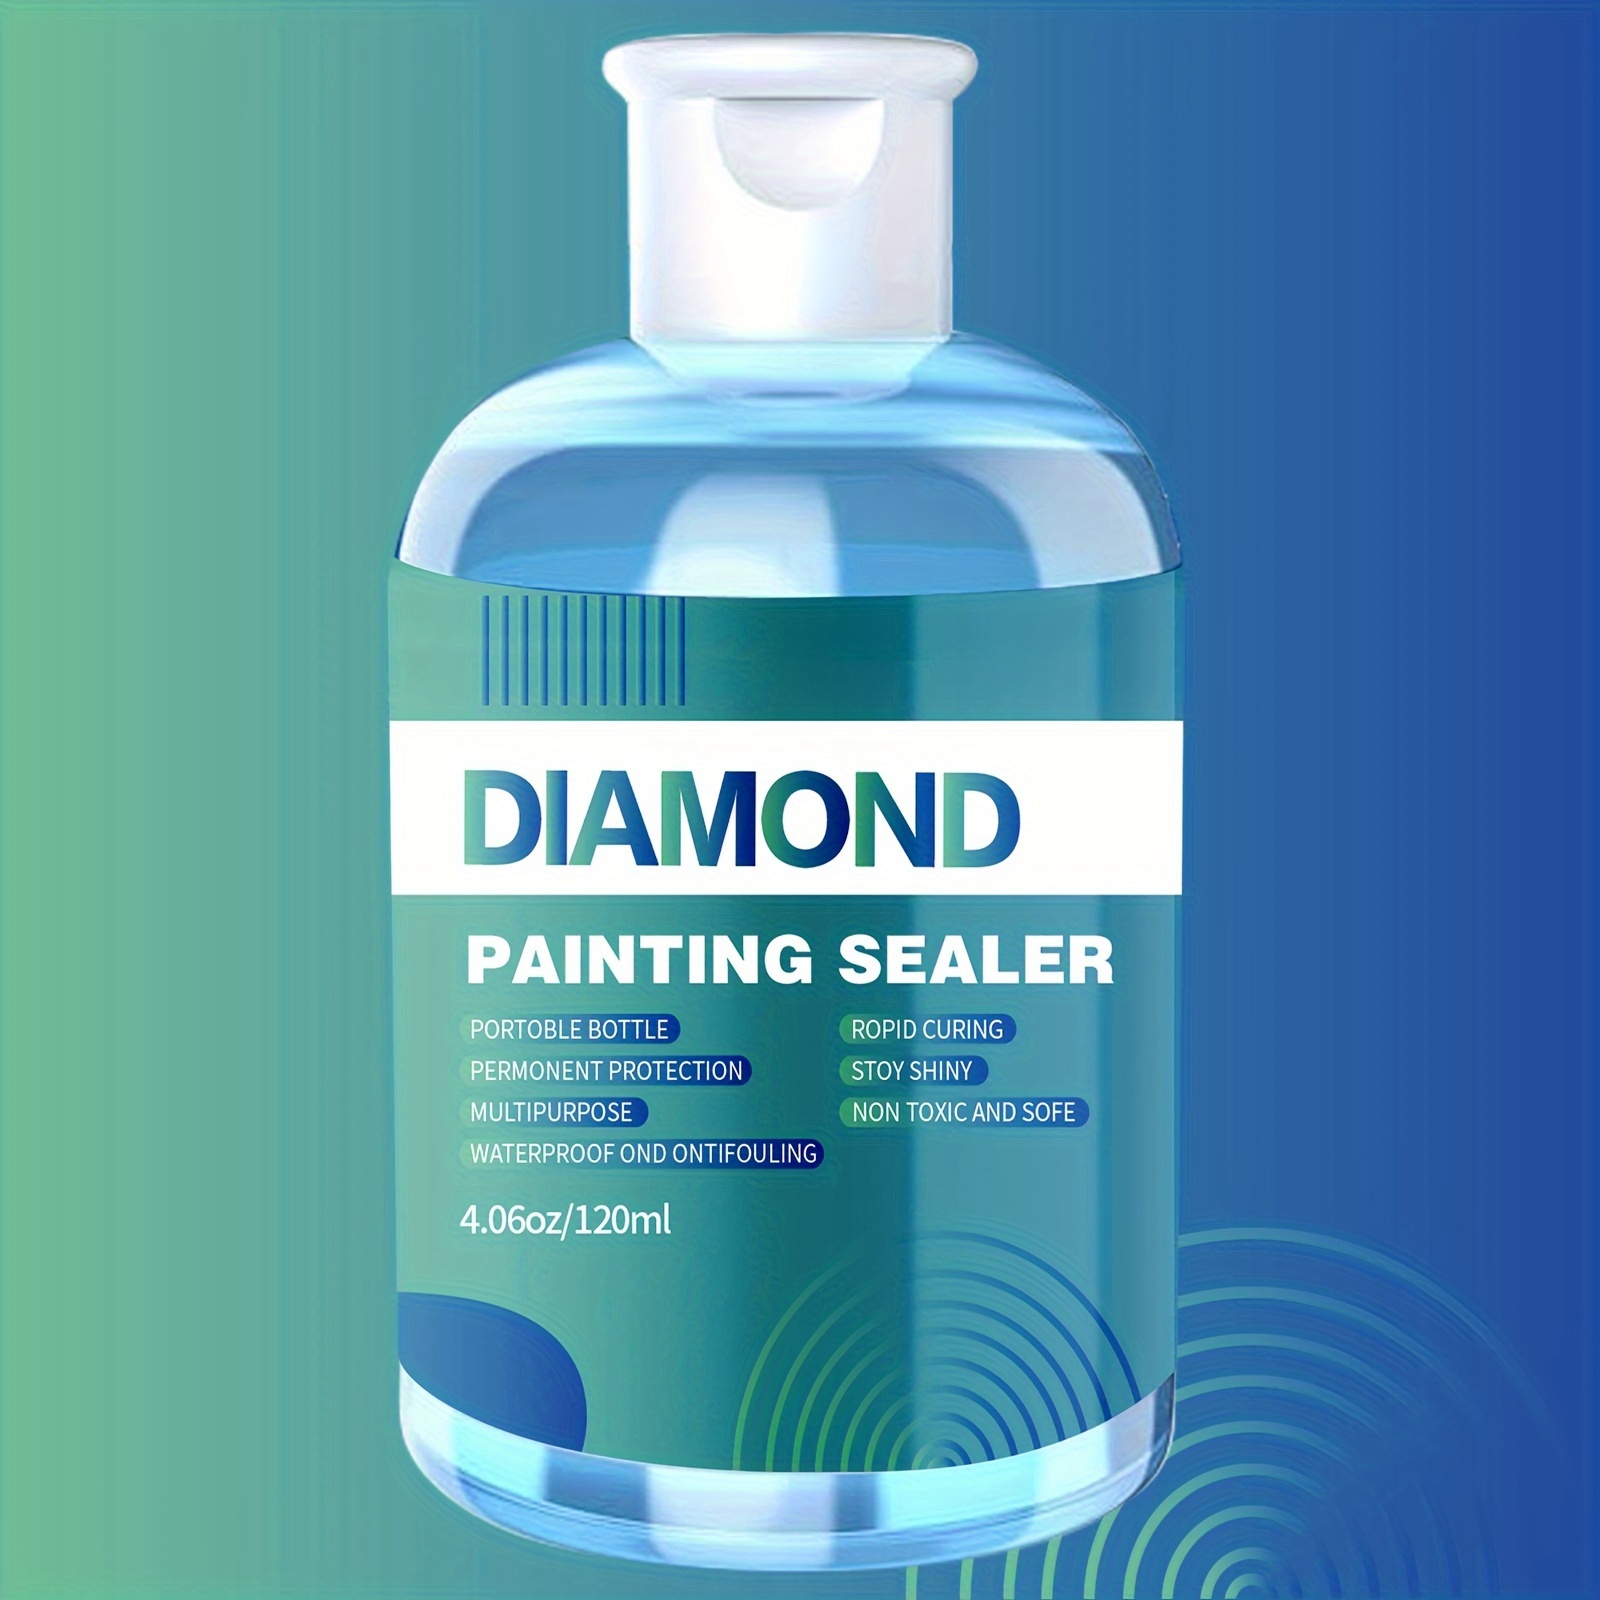 Diamond Painting Sealer With 3 Brushes Diy Diamond Art - Temu